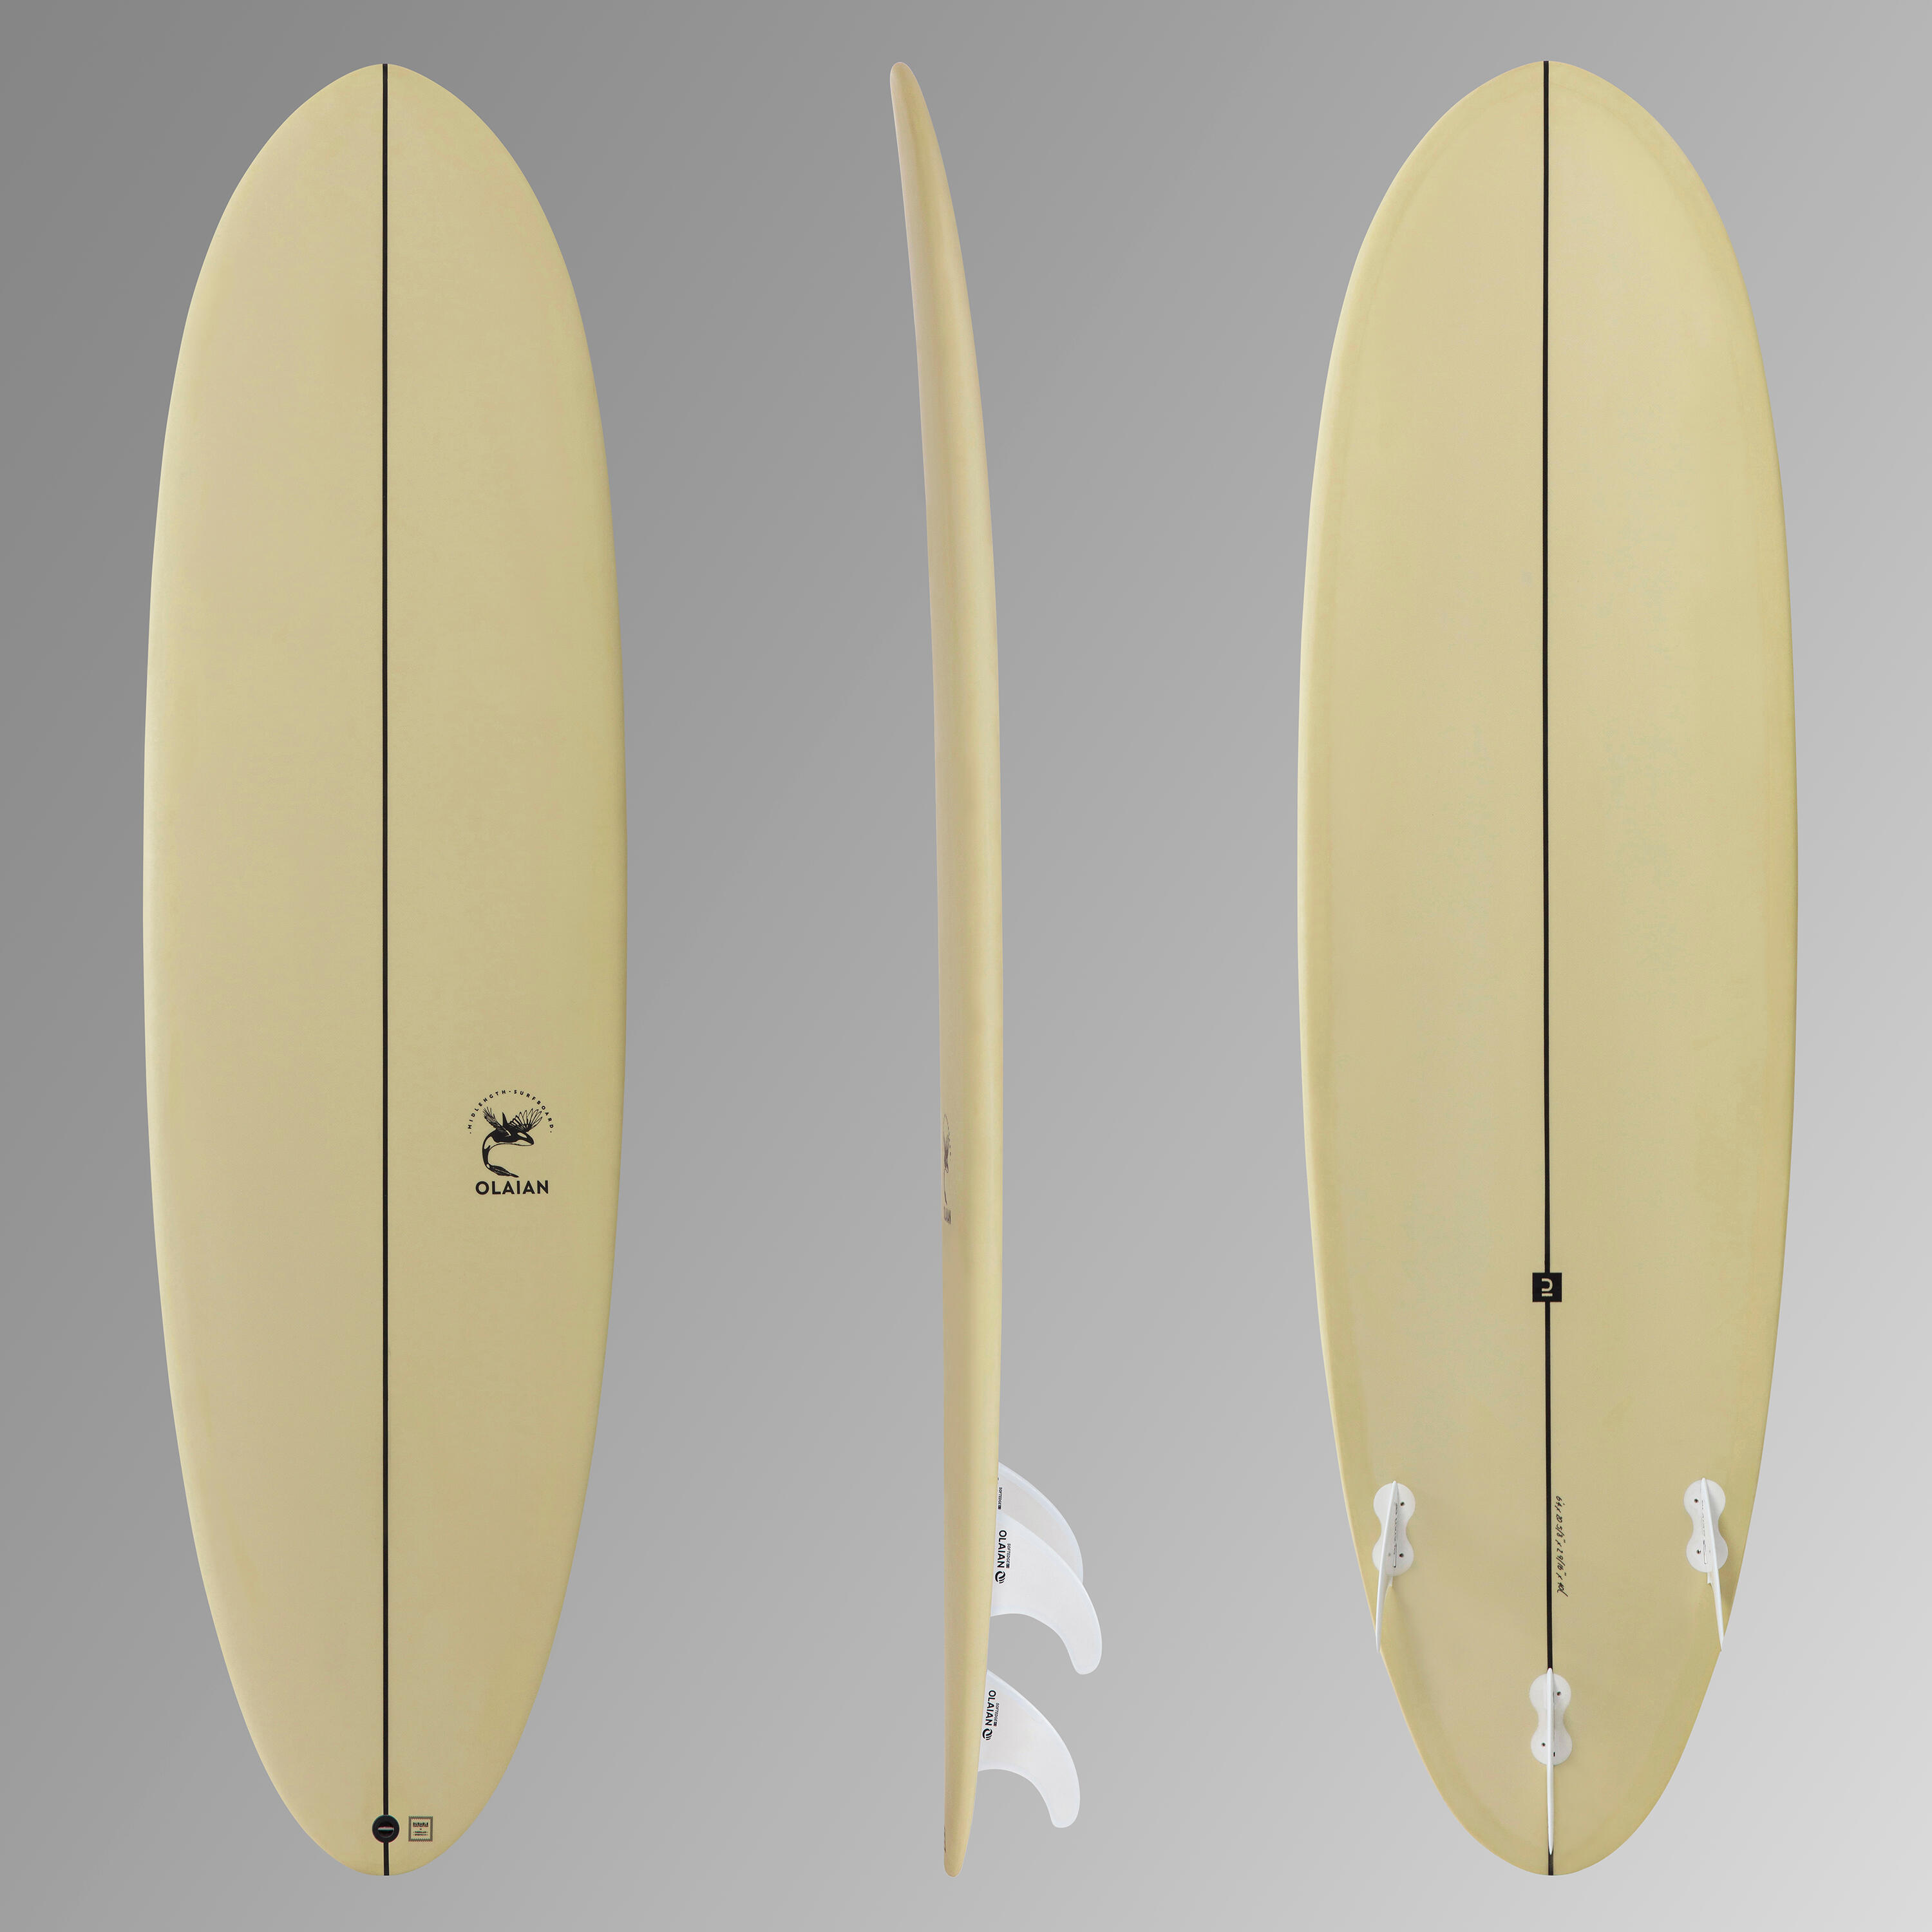 Placă spumă surf 500 6’4” înotătoare incluse